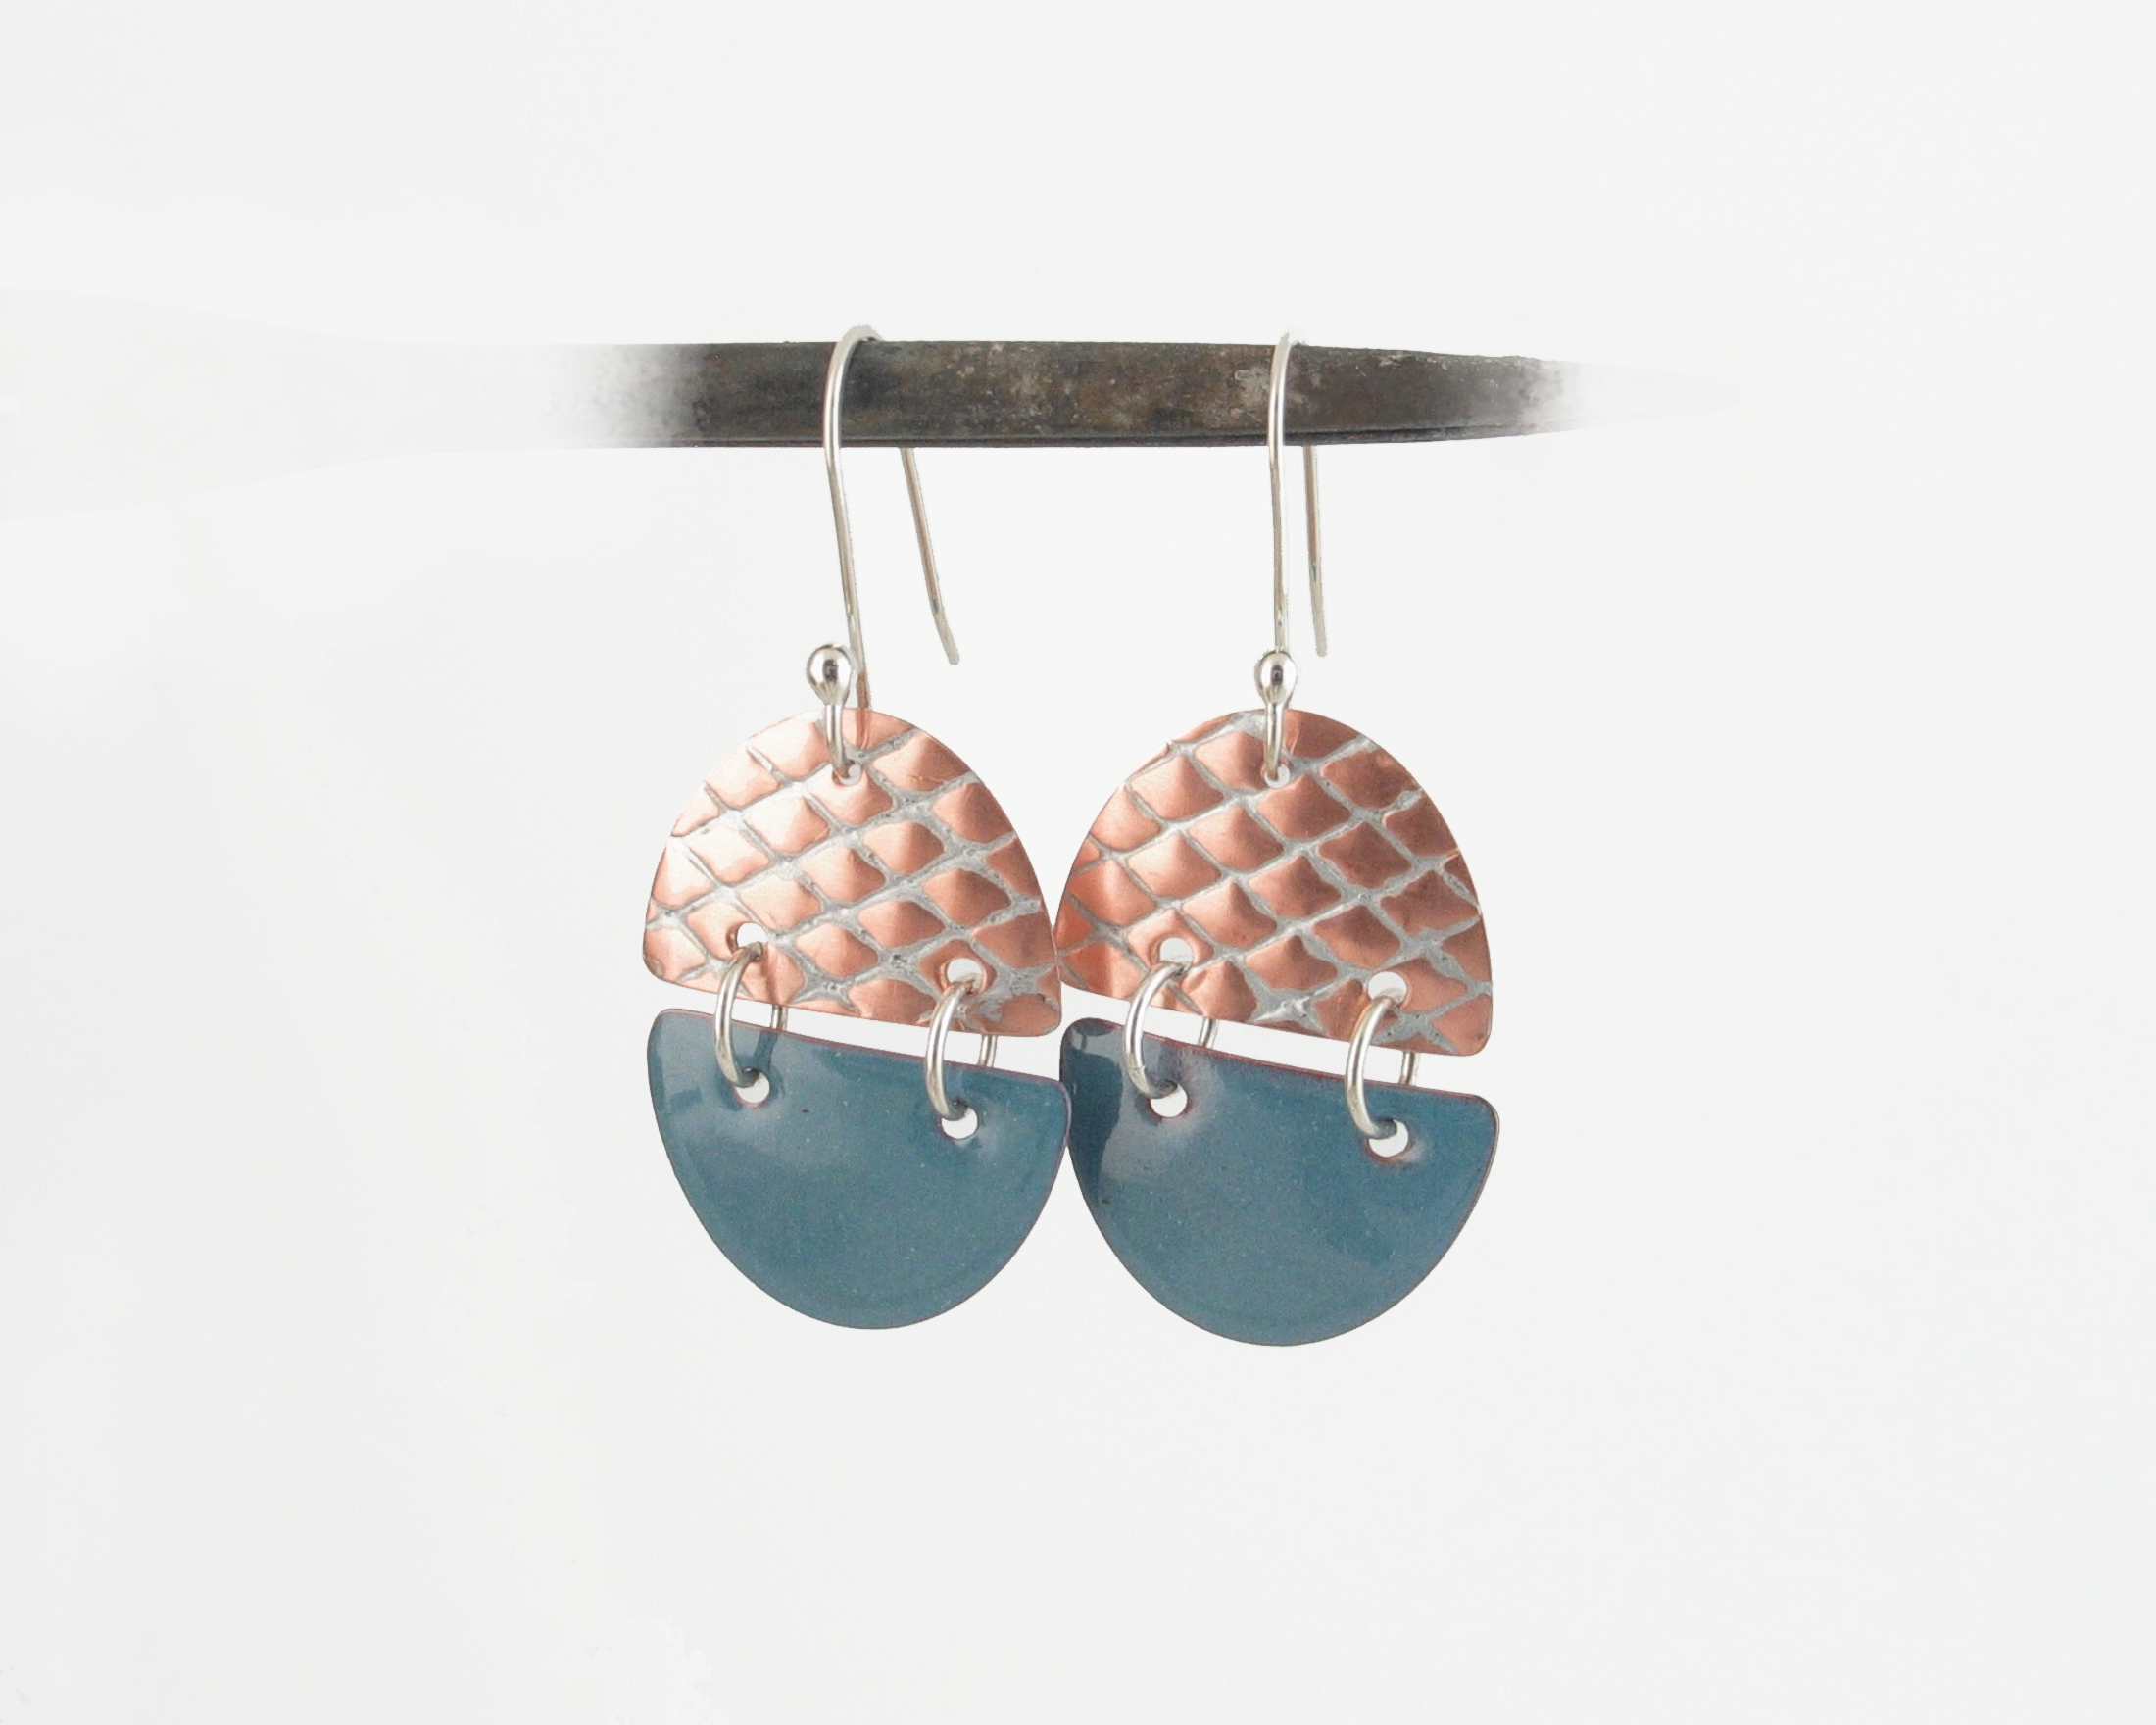 Delft Blue Art Deco Copper Enamel Dangle Earrings